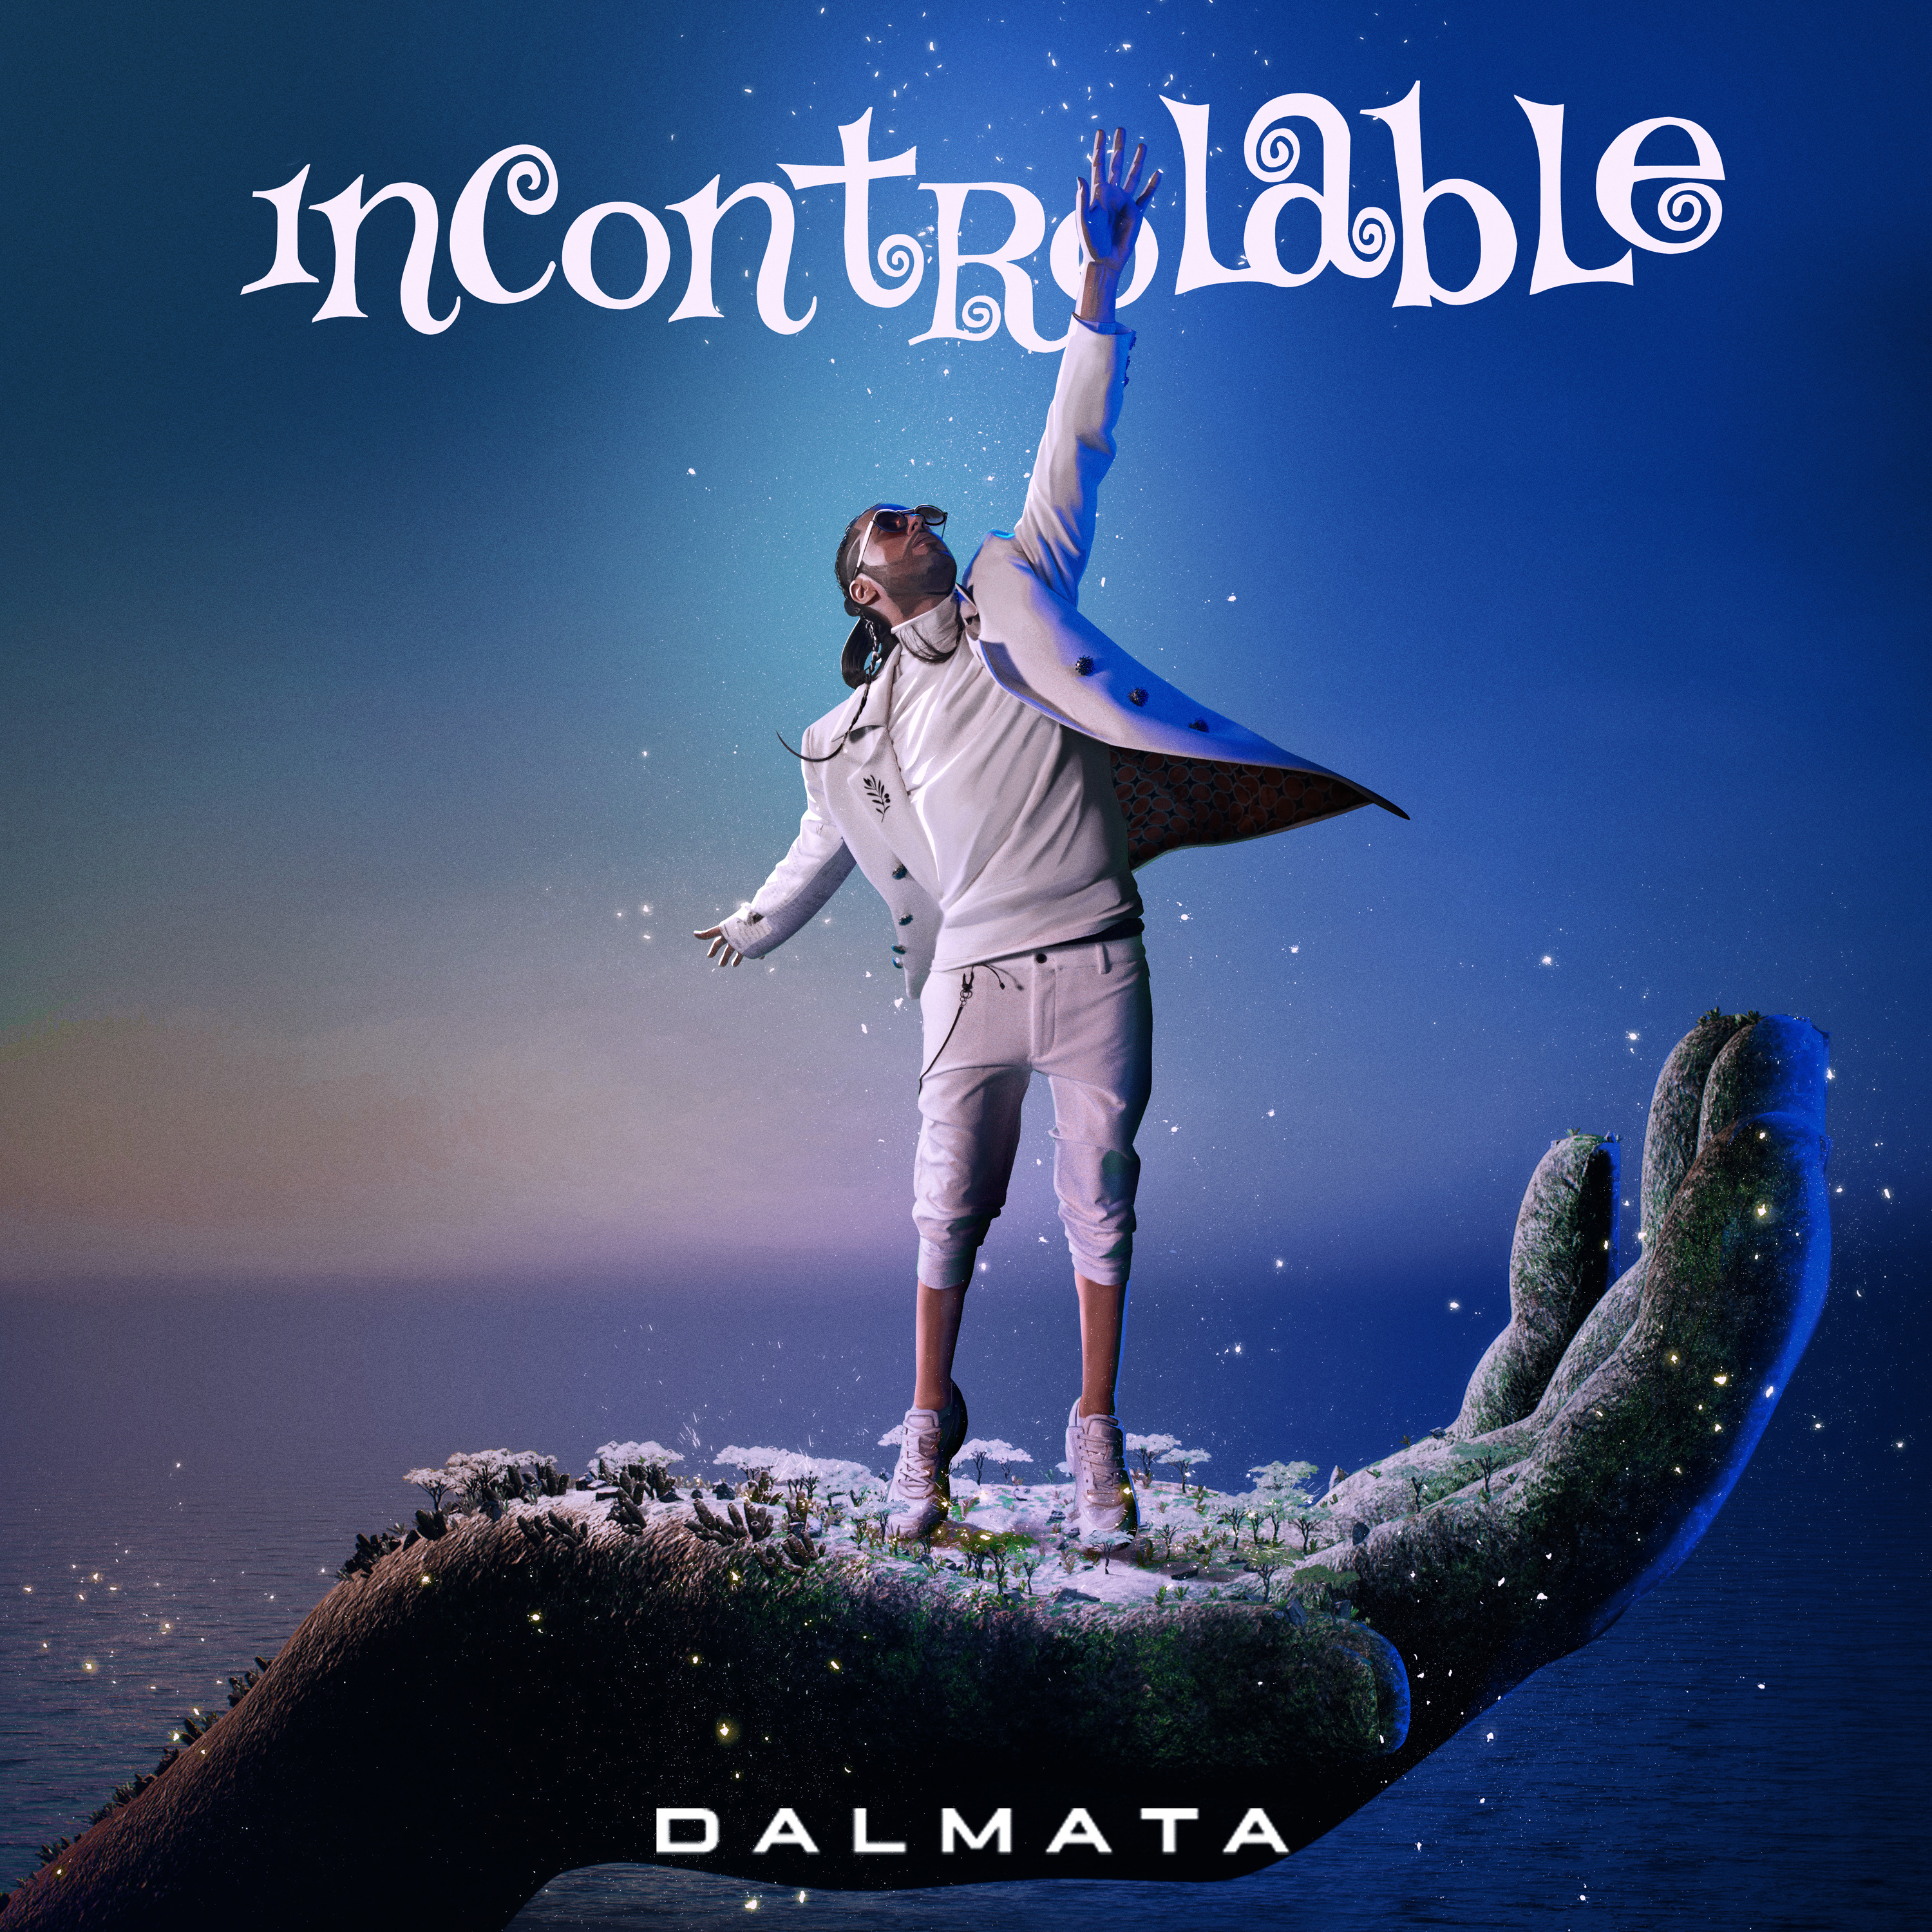 Dalmata estrena nueva canción titulada ‘Incontrolable’